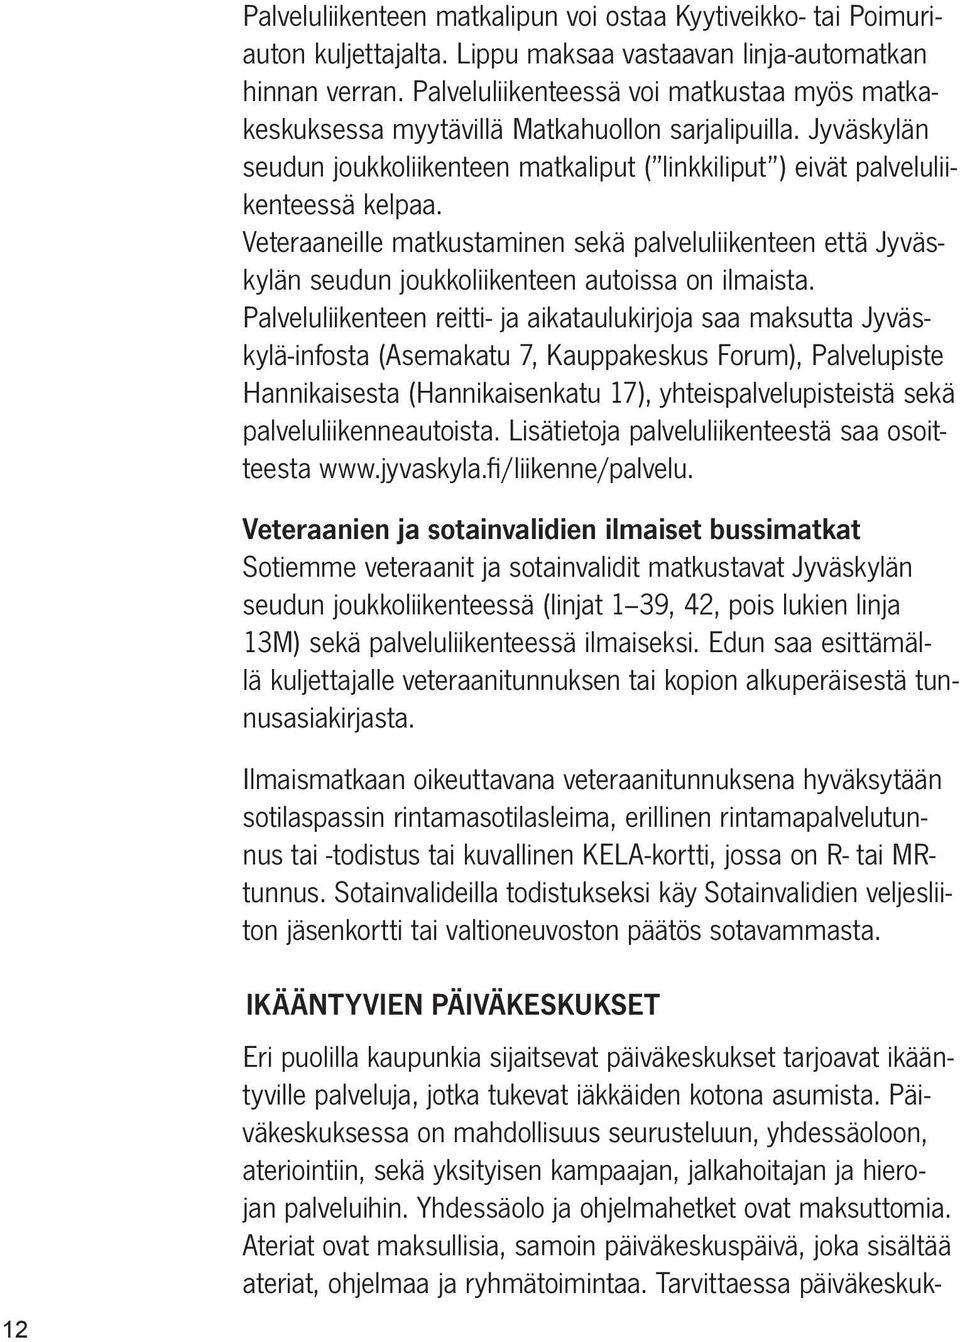 Veteraaneille matkustaminen sekä palveluliikenteen että Jyväskylän seudun joukkoliikenteen autoissa on ilmaista.